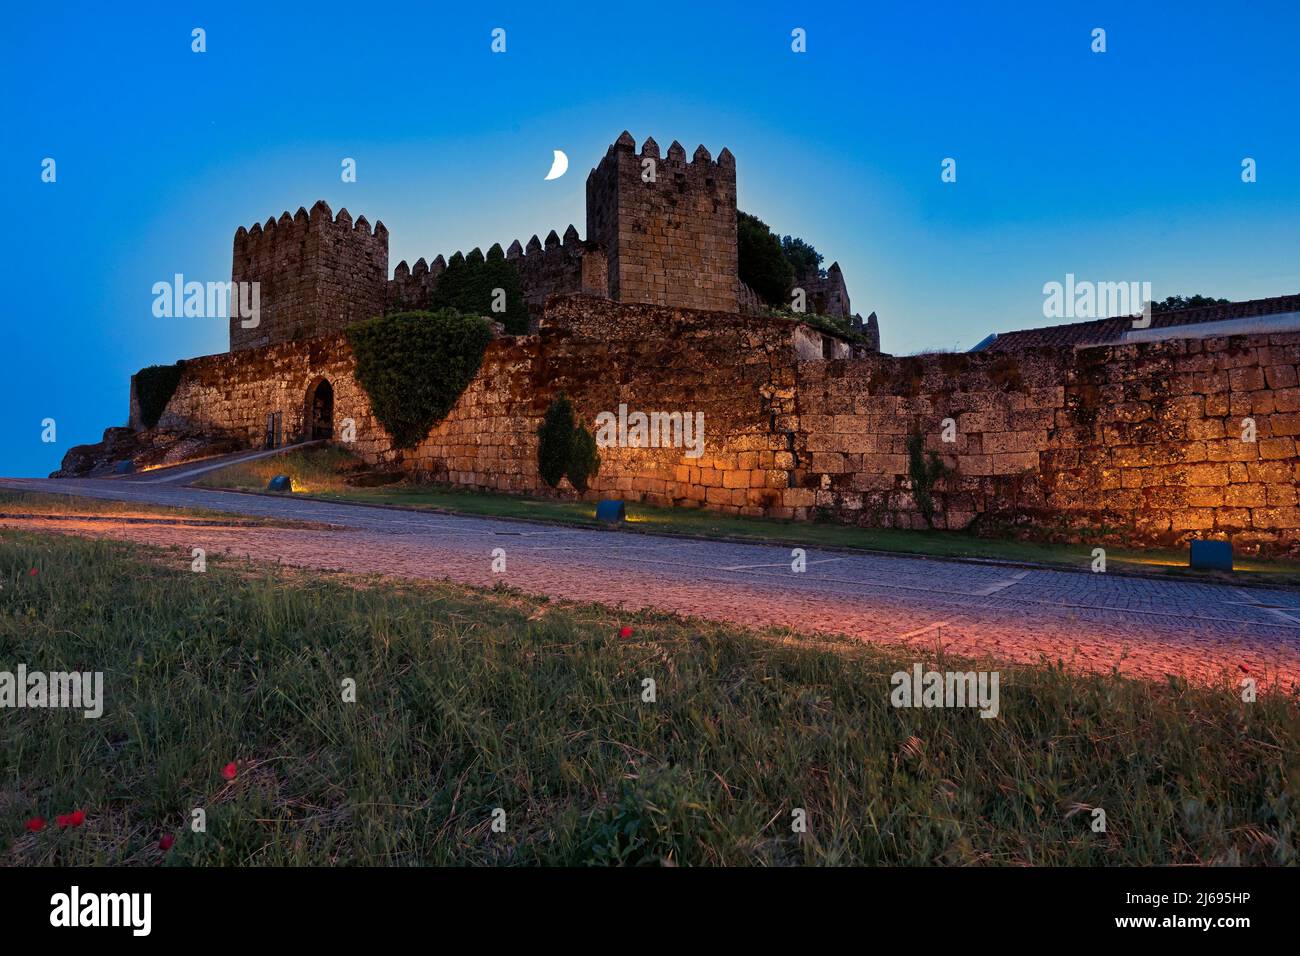 Treason's Gate and ramparts at twilight, Trancoso Castle, Serra da Estrela, Centro, Portugal Stock Photo